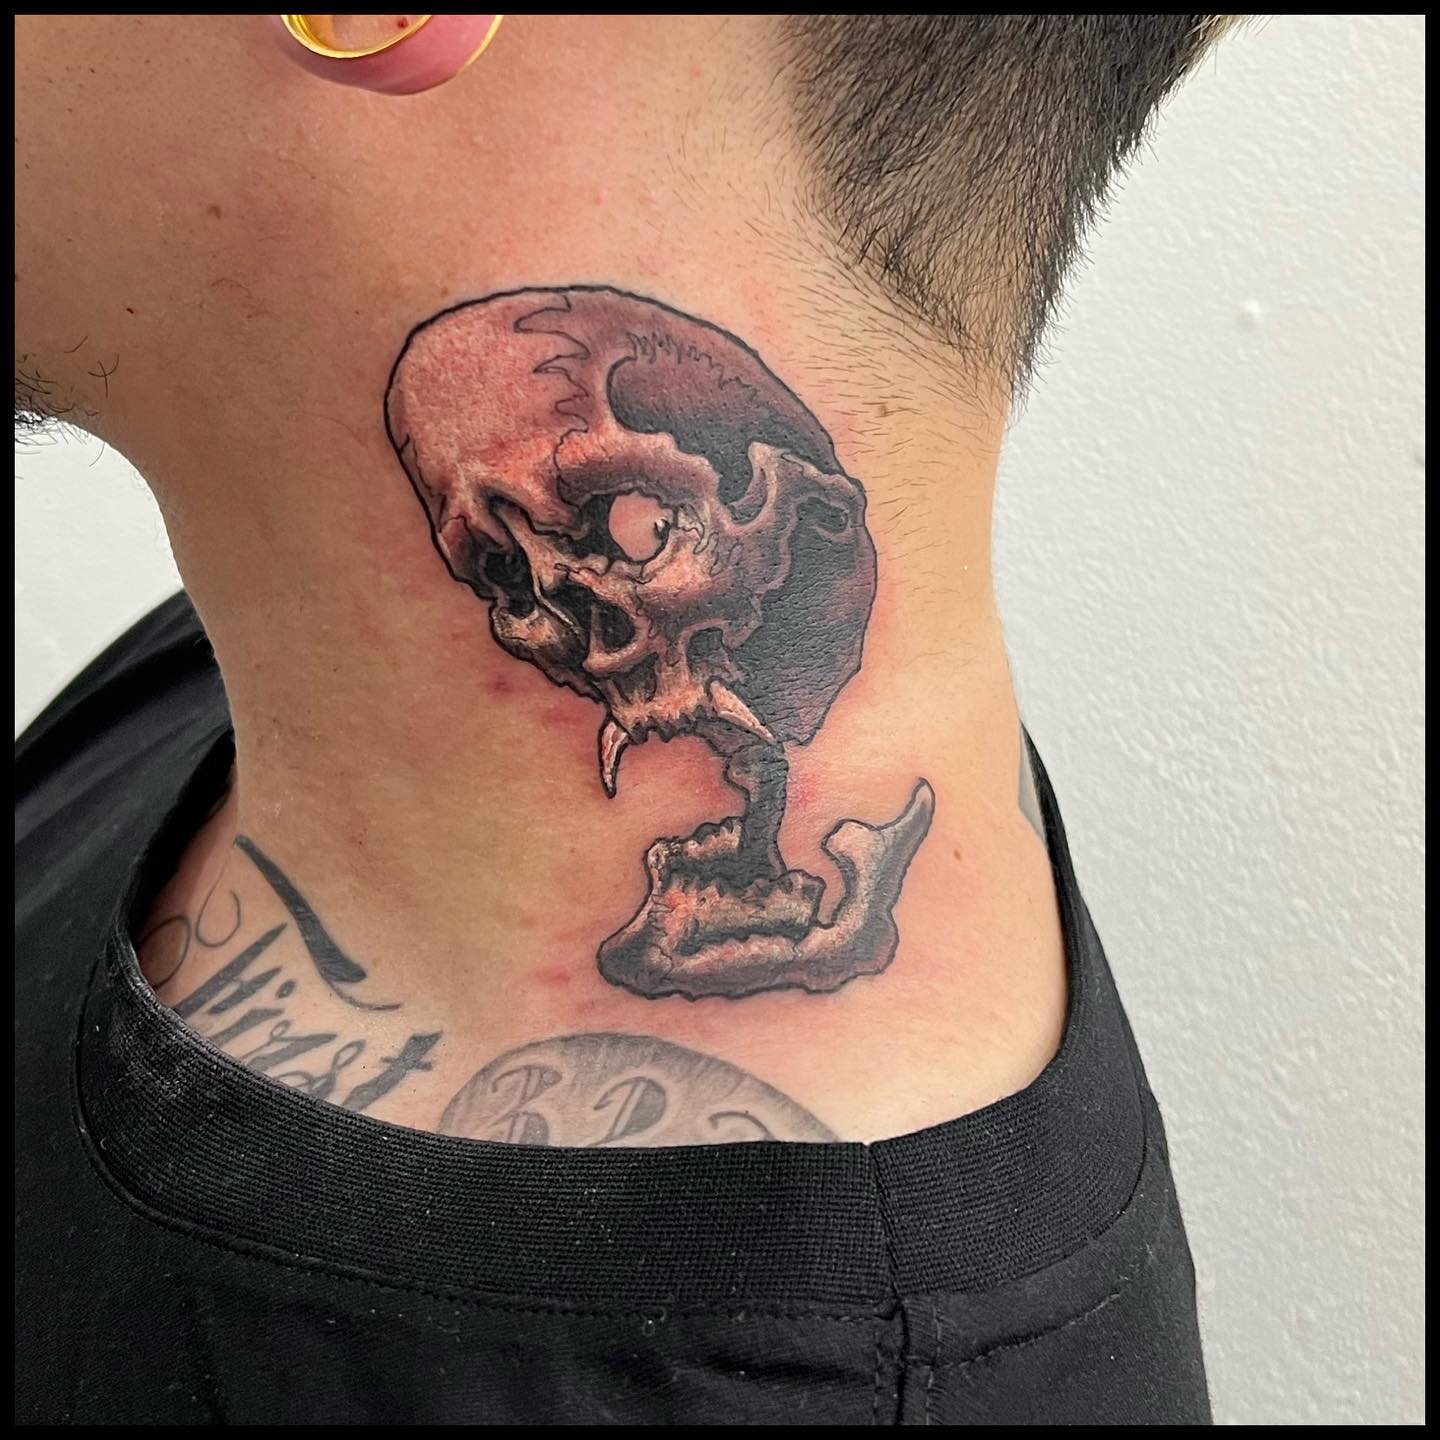 首 #スカル#skull #skulltattoo #tattoo #ink #freehand #blackandgray #horimasa #tokyo #56 #56tattoo #スカル #ガイコツ #タトゥー #スミ #イレズミ #フリーハンド #ブラックアンドグレー #ホリマサ #骸骨 #刺青 #墨 #彫雅 #東京